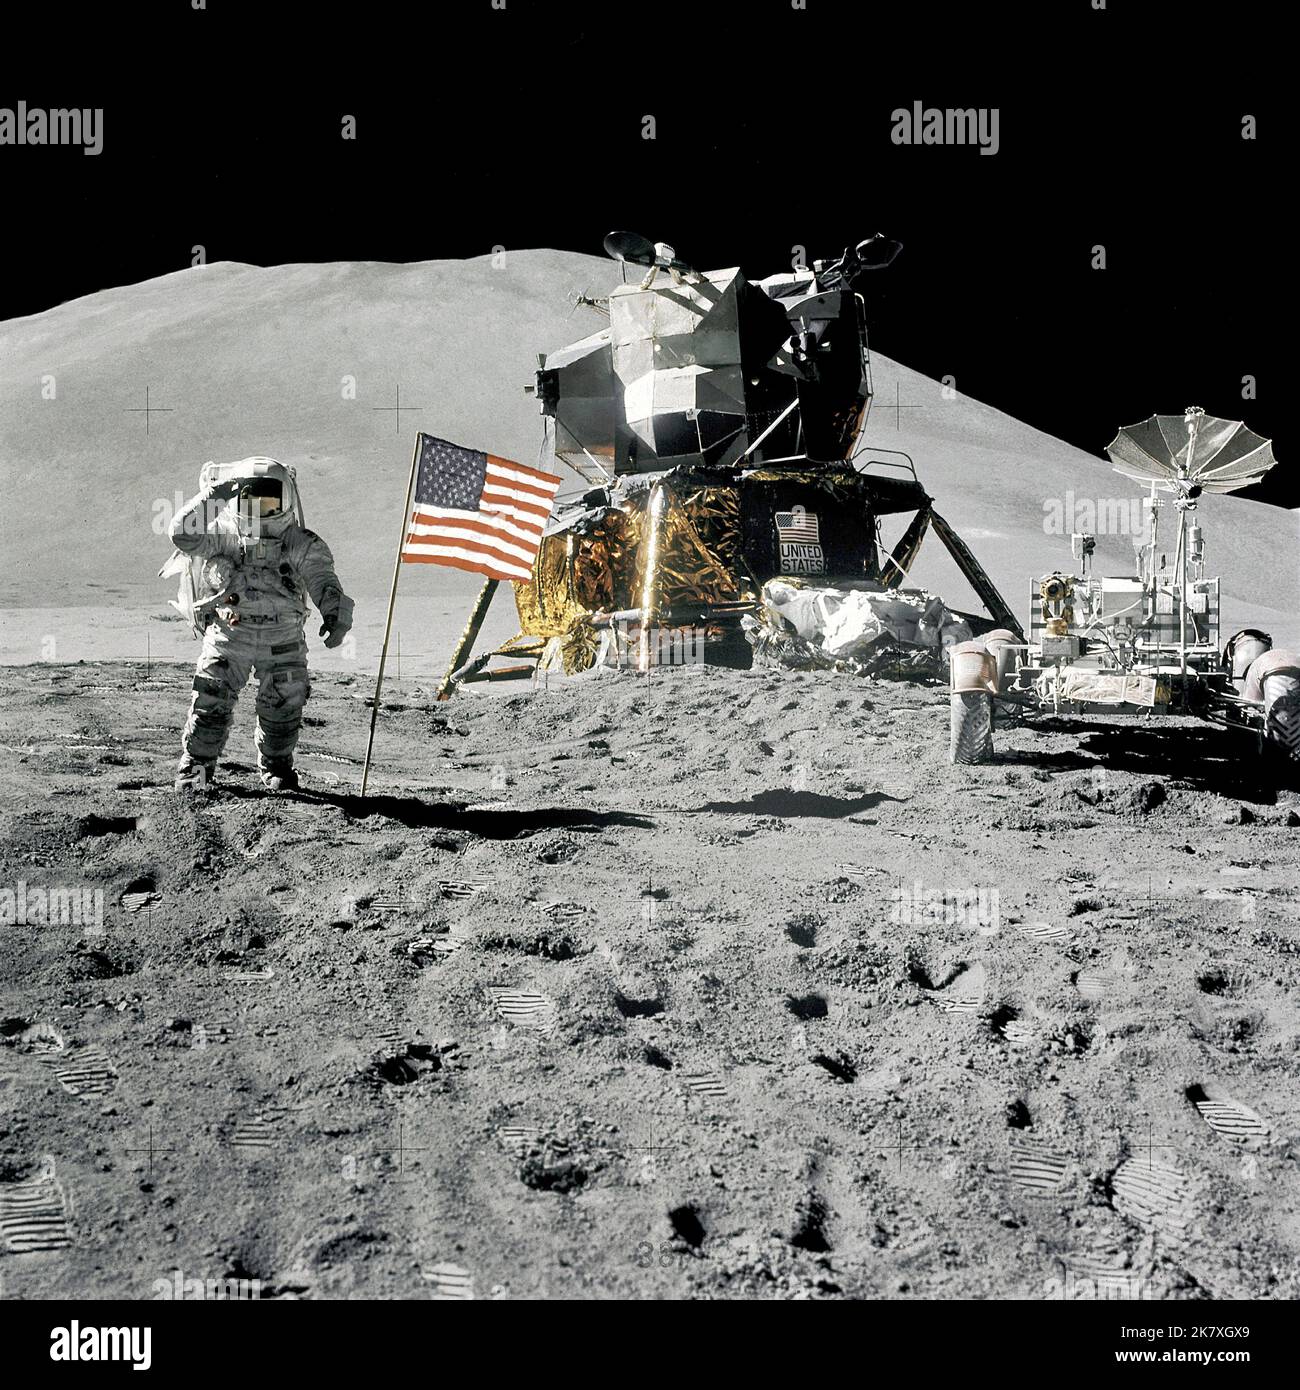 Die Apollo-15-Astronauten Jim Iwrin und David Scott stellten das erste Lunar Roving-Fahrzeug auf den Mond. Während ihres 67-stündigen Aufenthalts nutzten sie den Rover, um drei separate Fahrten über den Landeplatz Hadley-Apennin zu Unternehmen. Hier begrüßt Irwin die amerikanische Flagge, während er neben der Mondlandefähre und dem Rover steht. Stockfoto